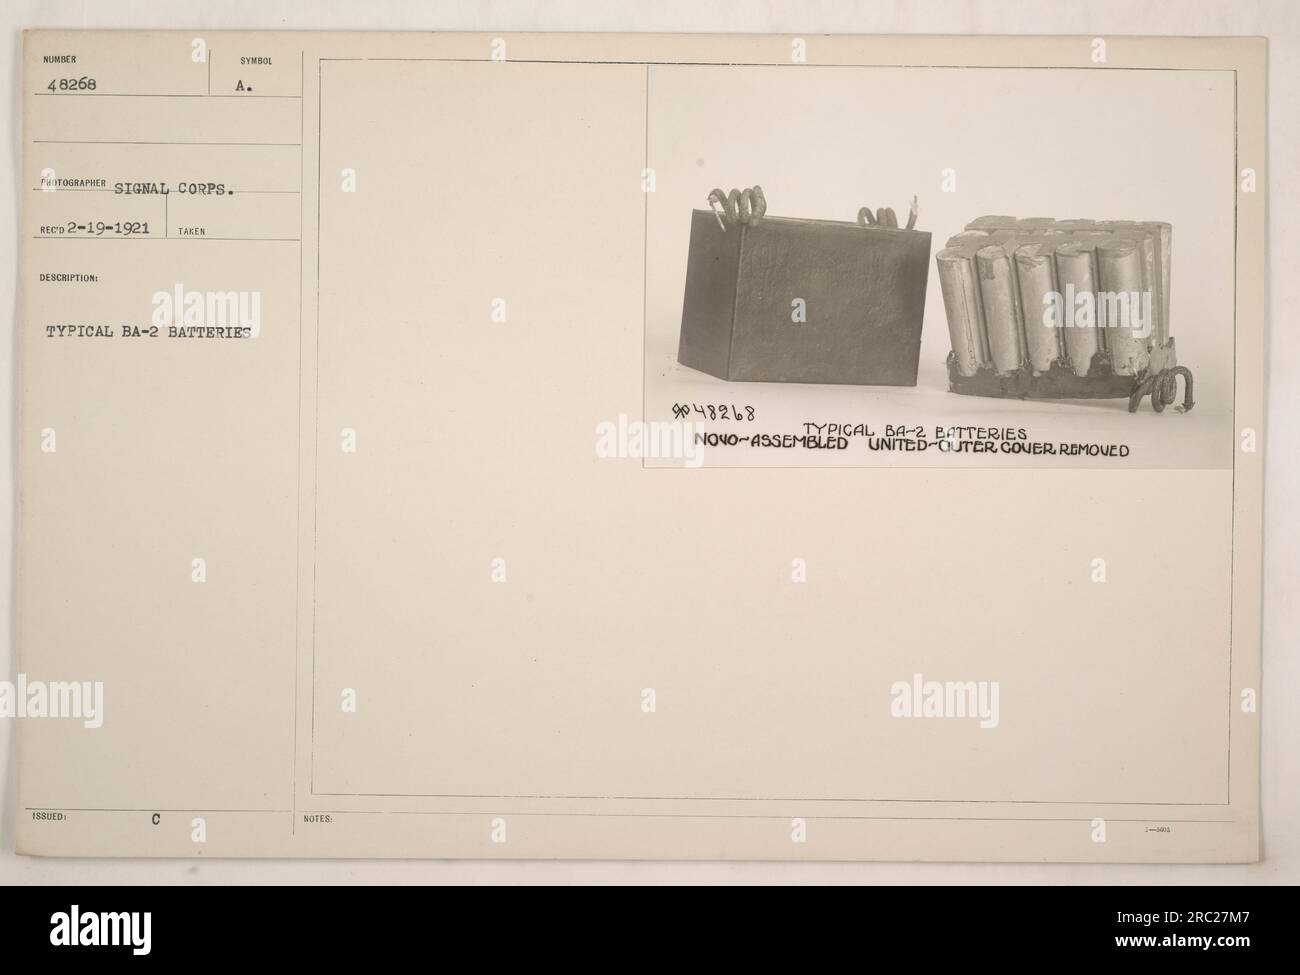 Imagen que representa una batería BA-2 típica, número de identificación 48268, tomada el 19 de febrero de 1921 por un fotógrafo del Cuerpo de Señales. La batería se muestra con la cubierta exterior quitada, y la fotografía incluye notas de anotación que mencionan su símbolo emitido 'A' y la frase 'NOVO-assembled United-Outer Cover removed'. Foto de stock